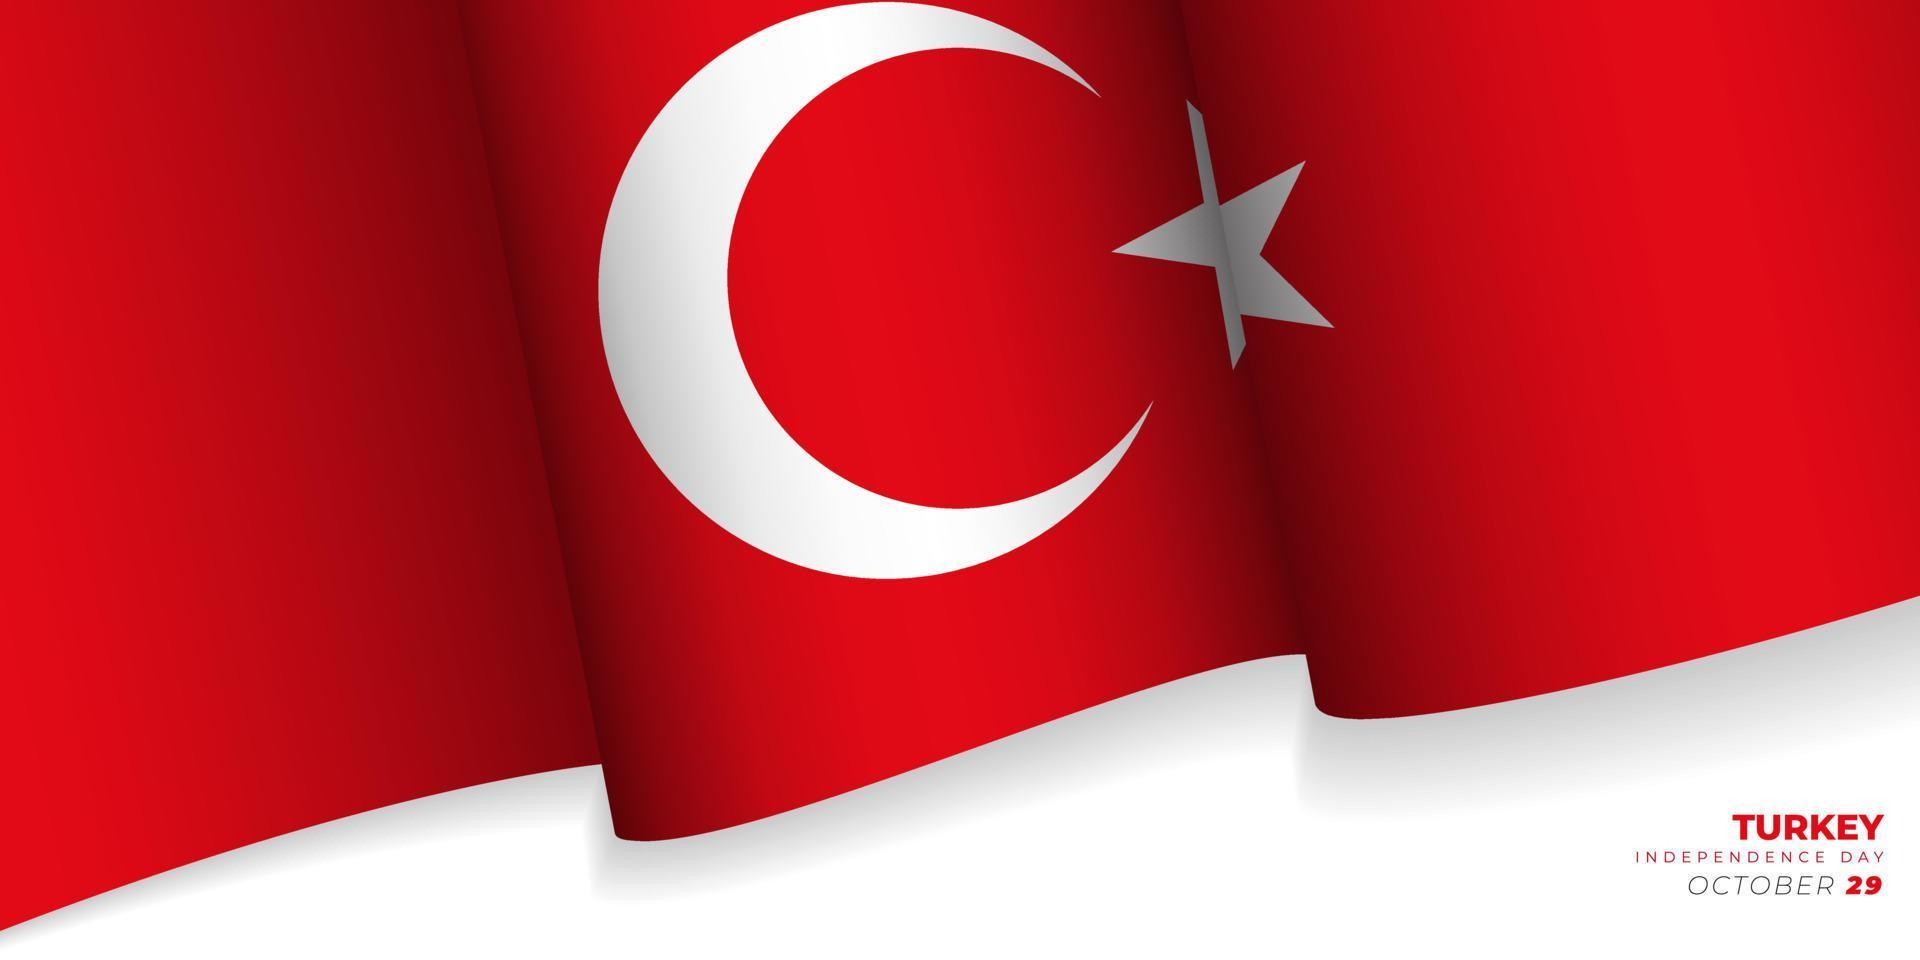 sventolando l'illustrazione di vettore della bandiera della Turchia. giorno dell'indipendenza della Turchia.